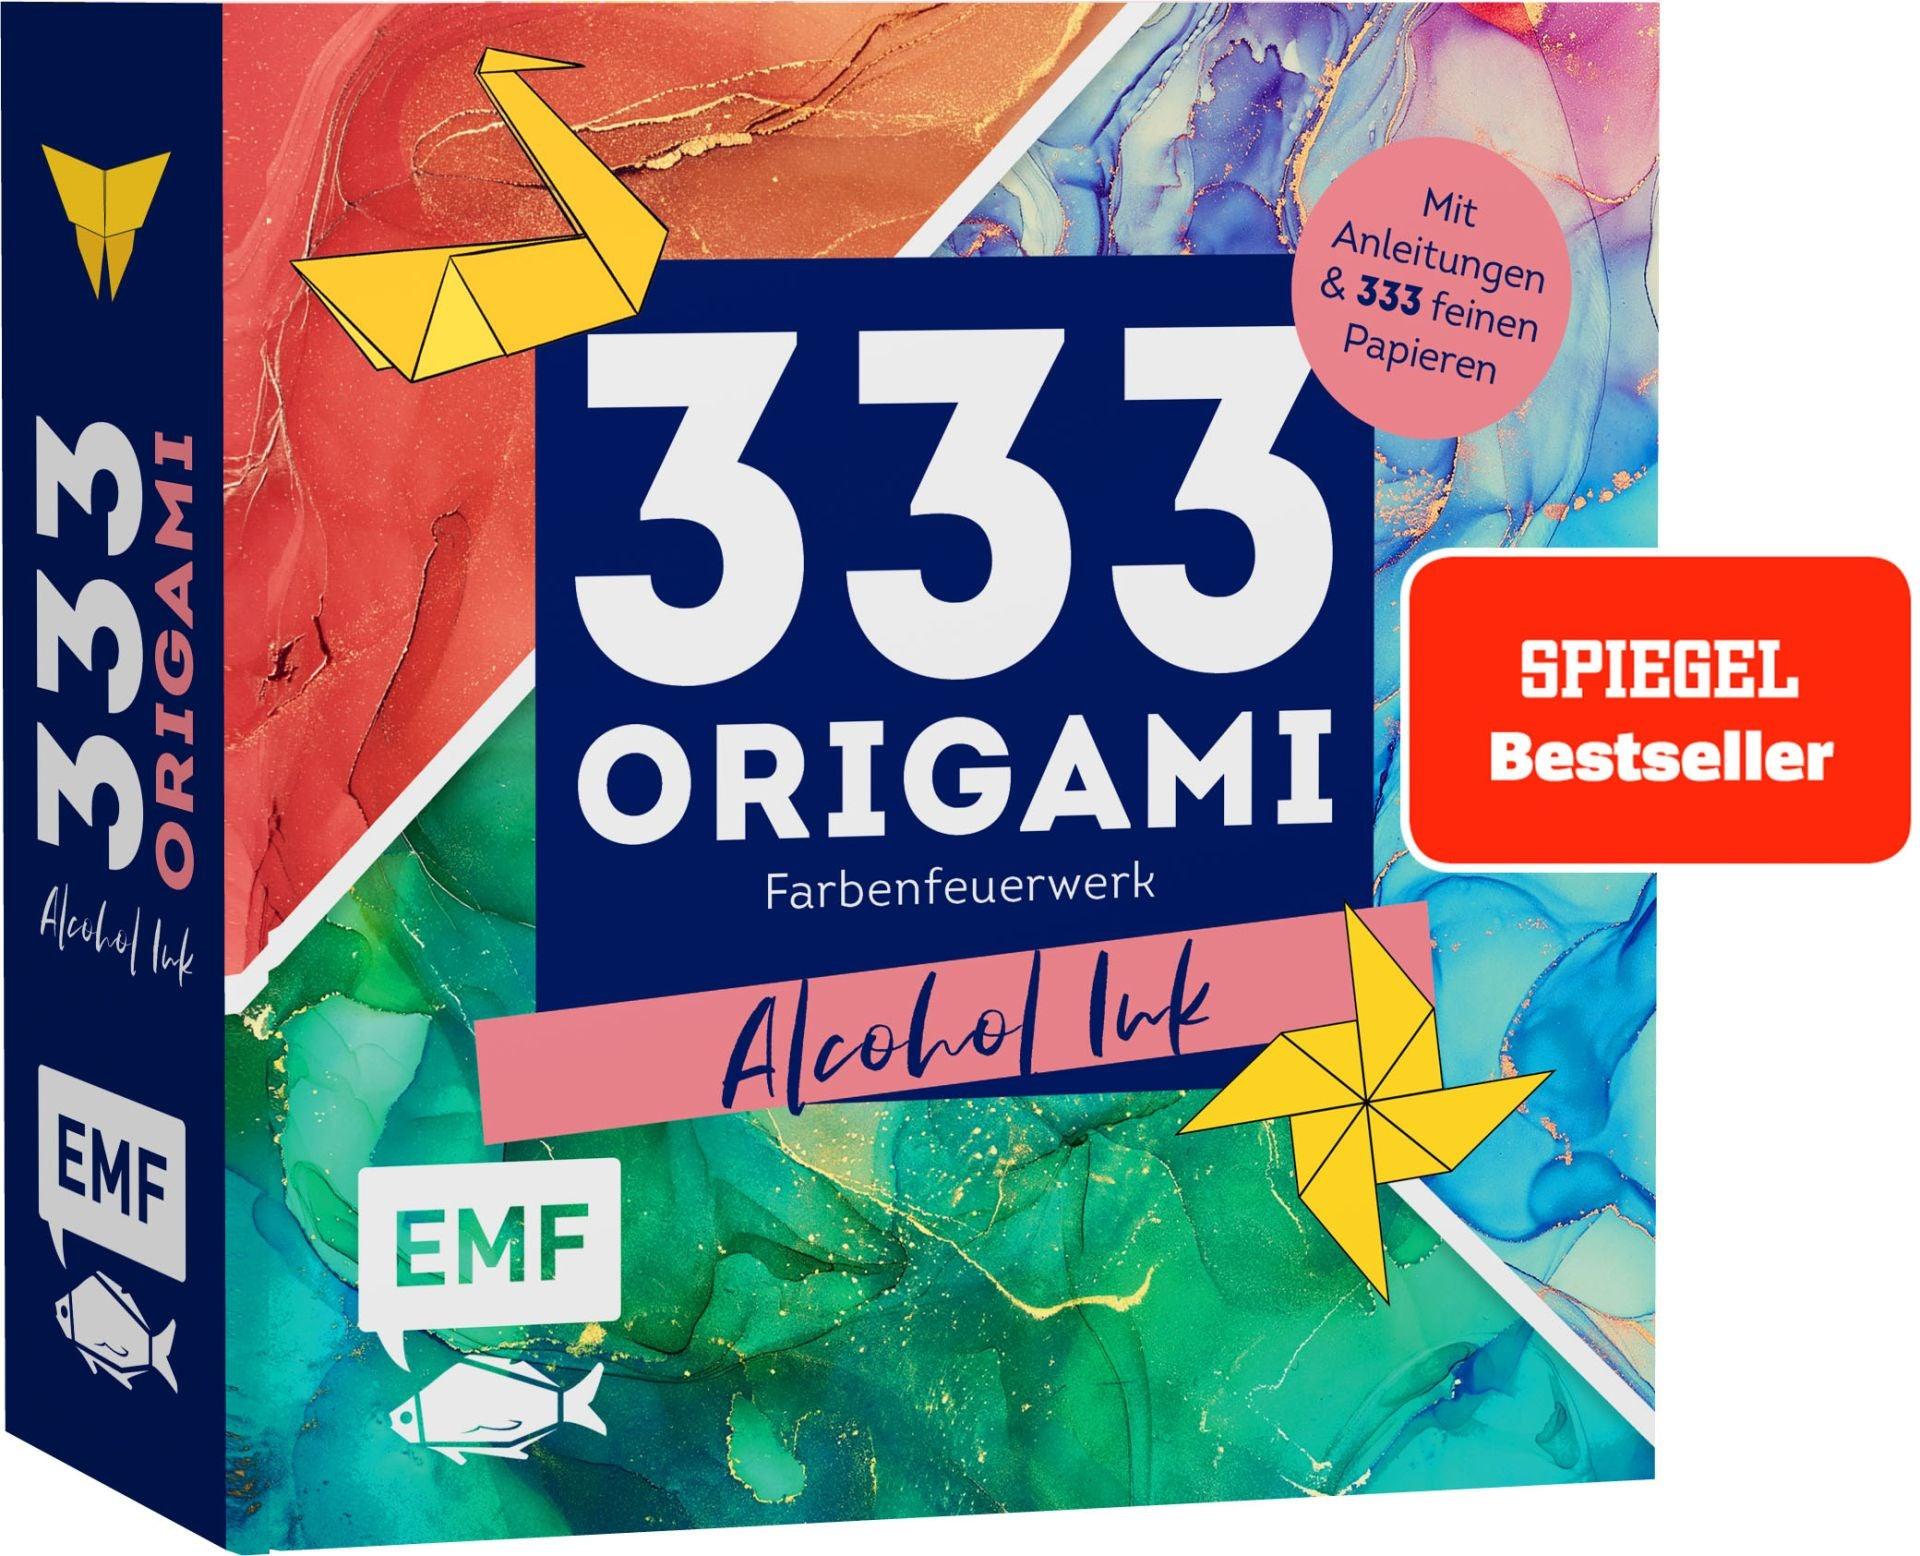 Origami Papier - Farbenfeuerwerk - www. kunstundspiel .de 978-3-7459-0610-3